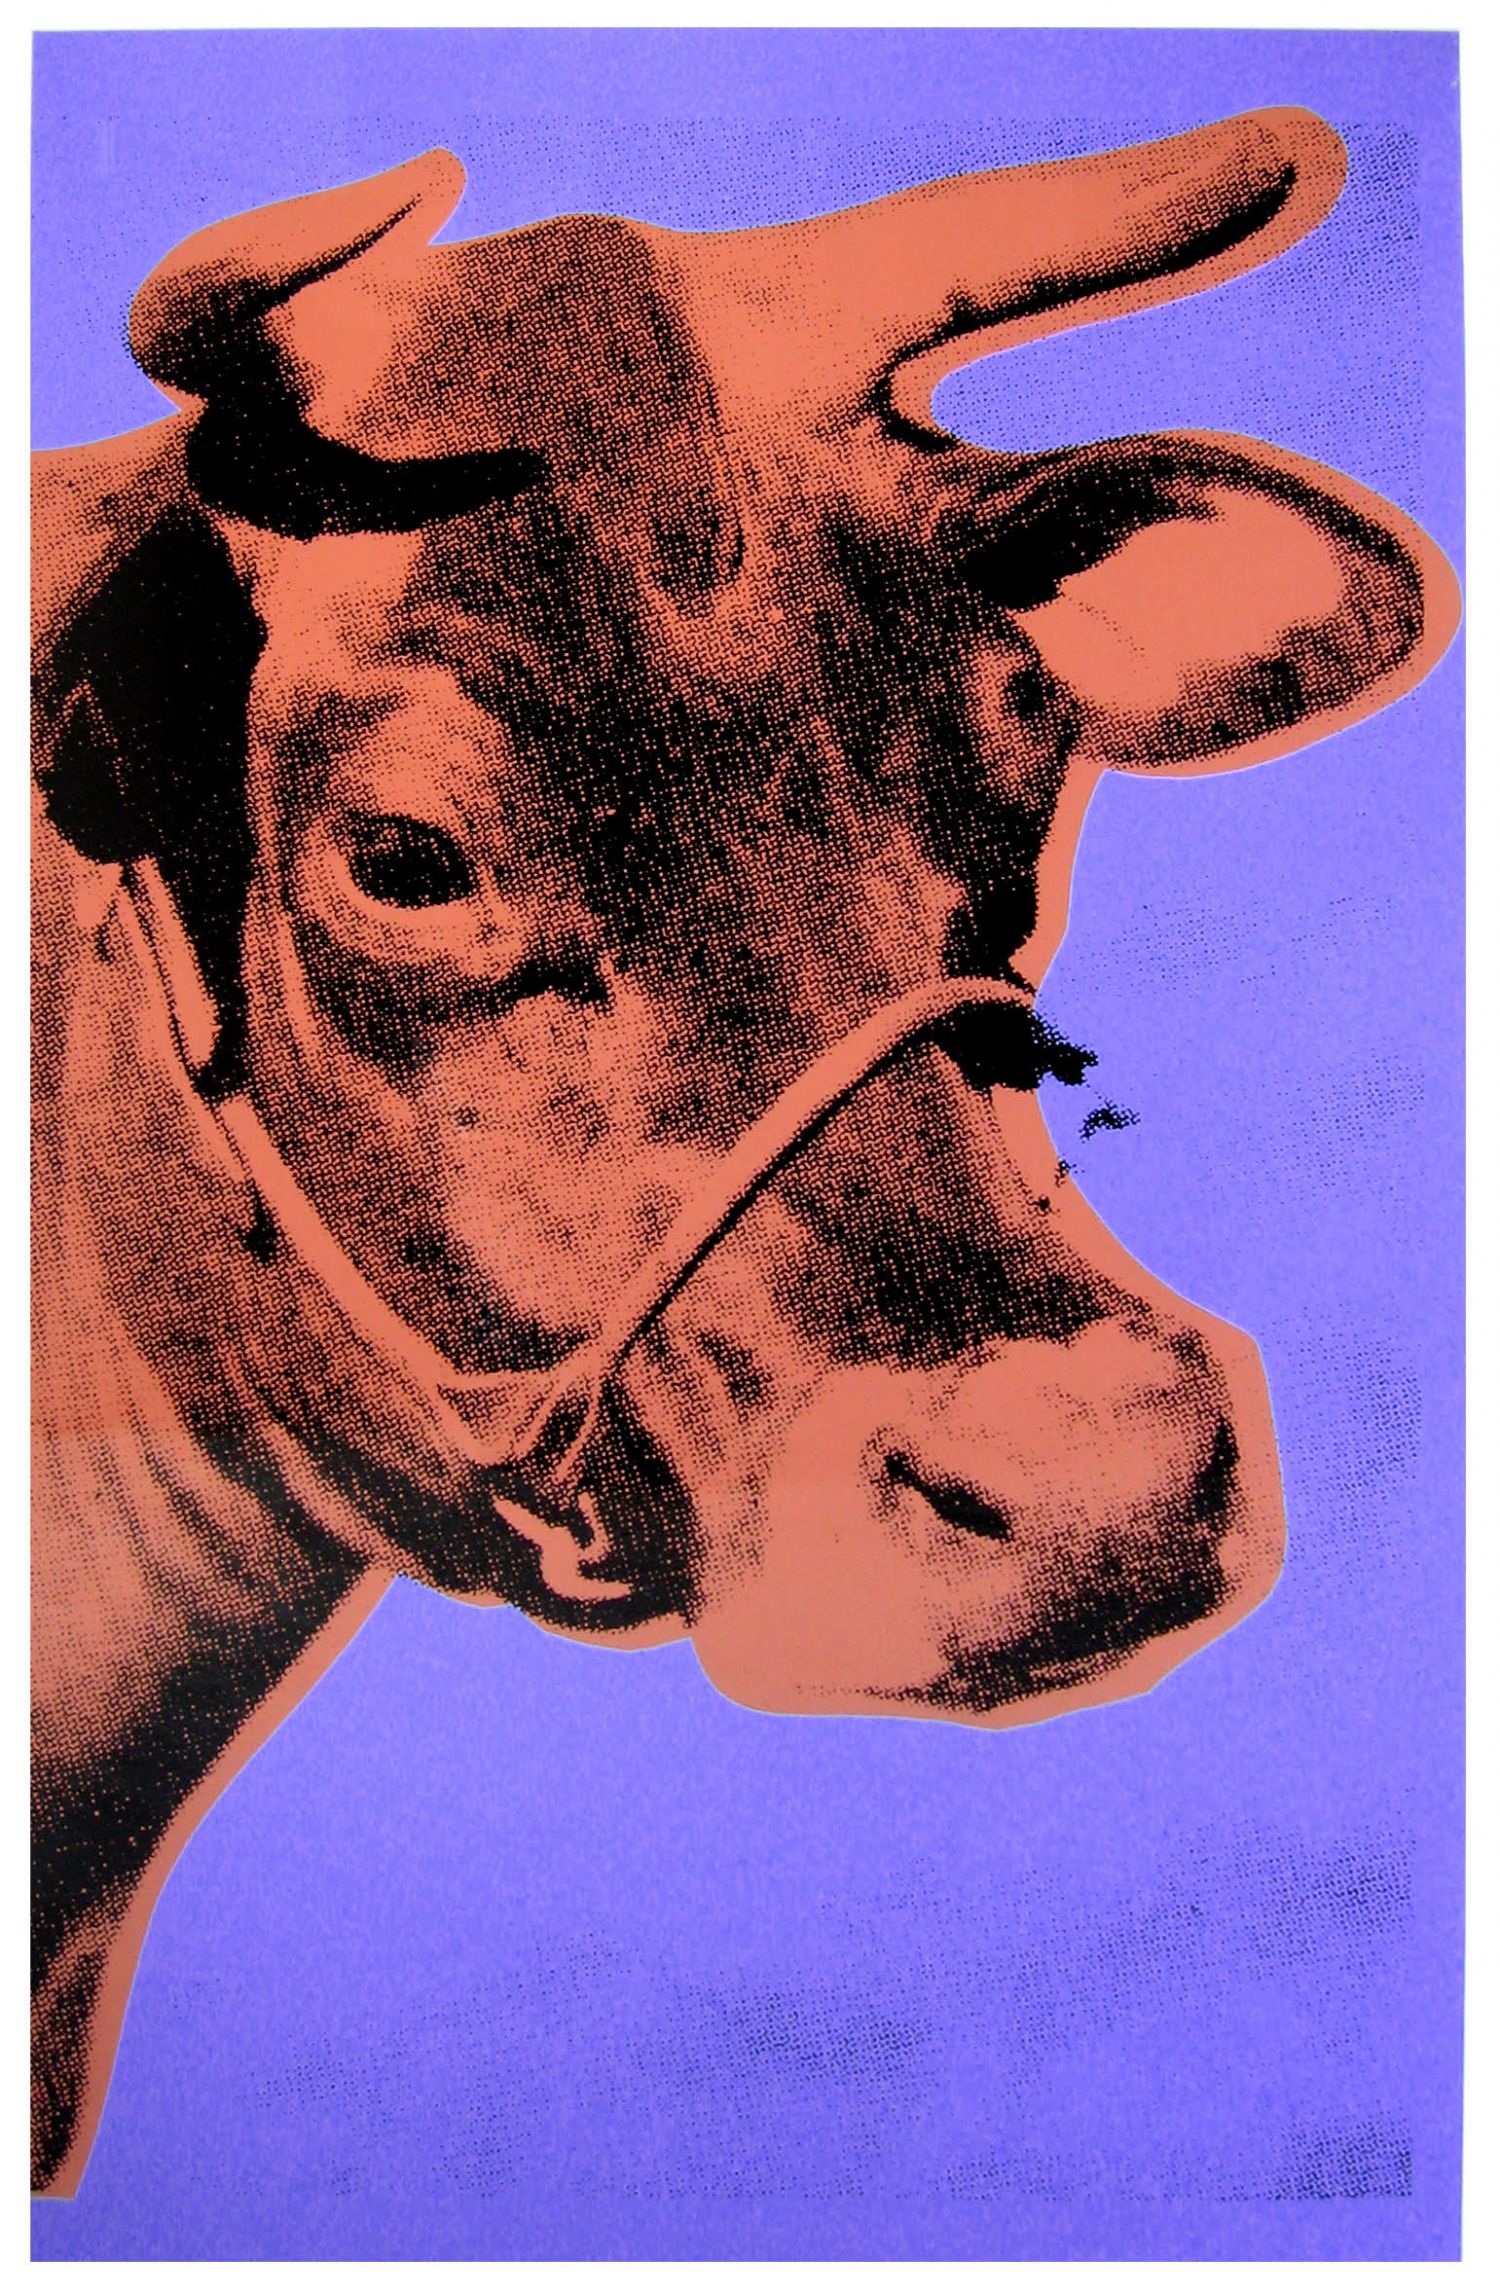 Andy Warhol Super Pop Next Exhibition Palacio De Santa Barbara Madrid Cow